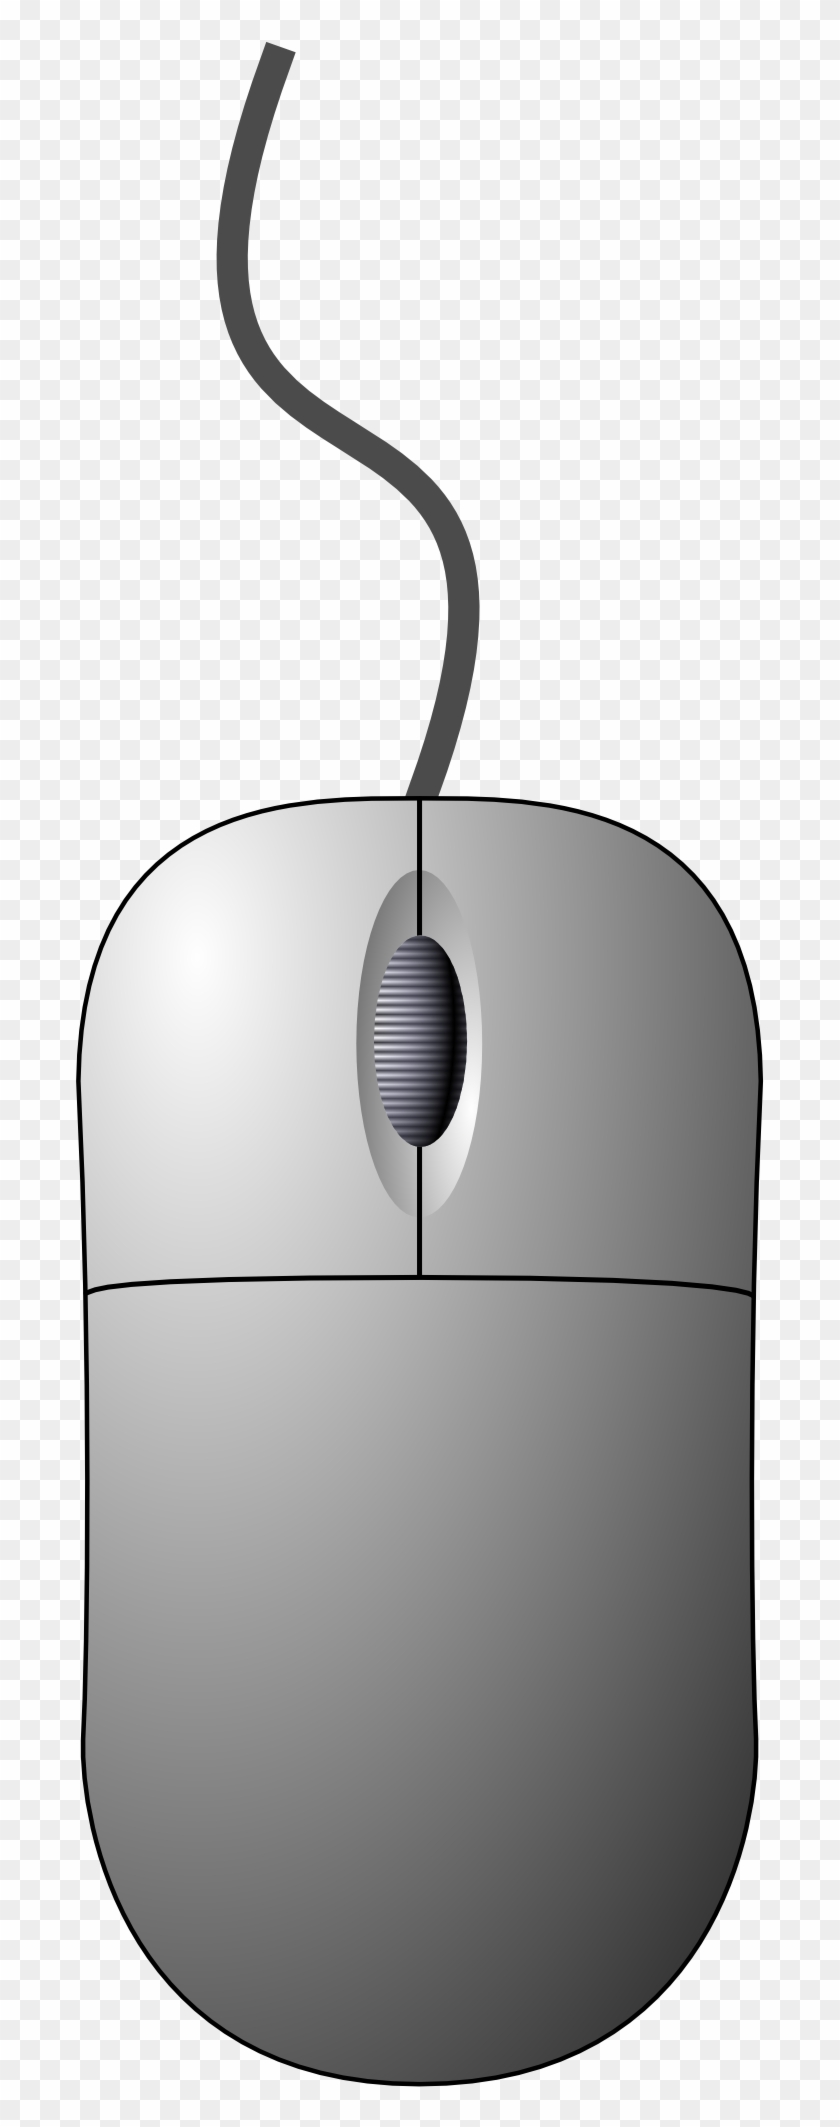 Pc Mouse Png Image - Computer Mouse Clip Art #241999